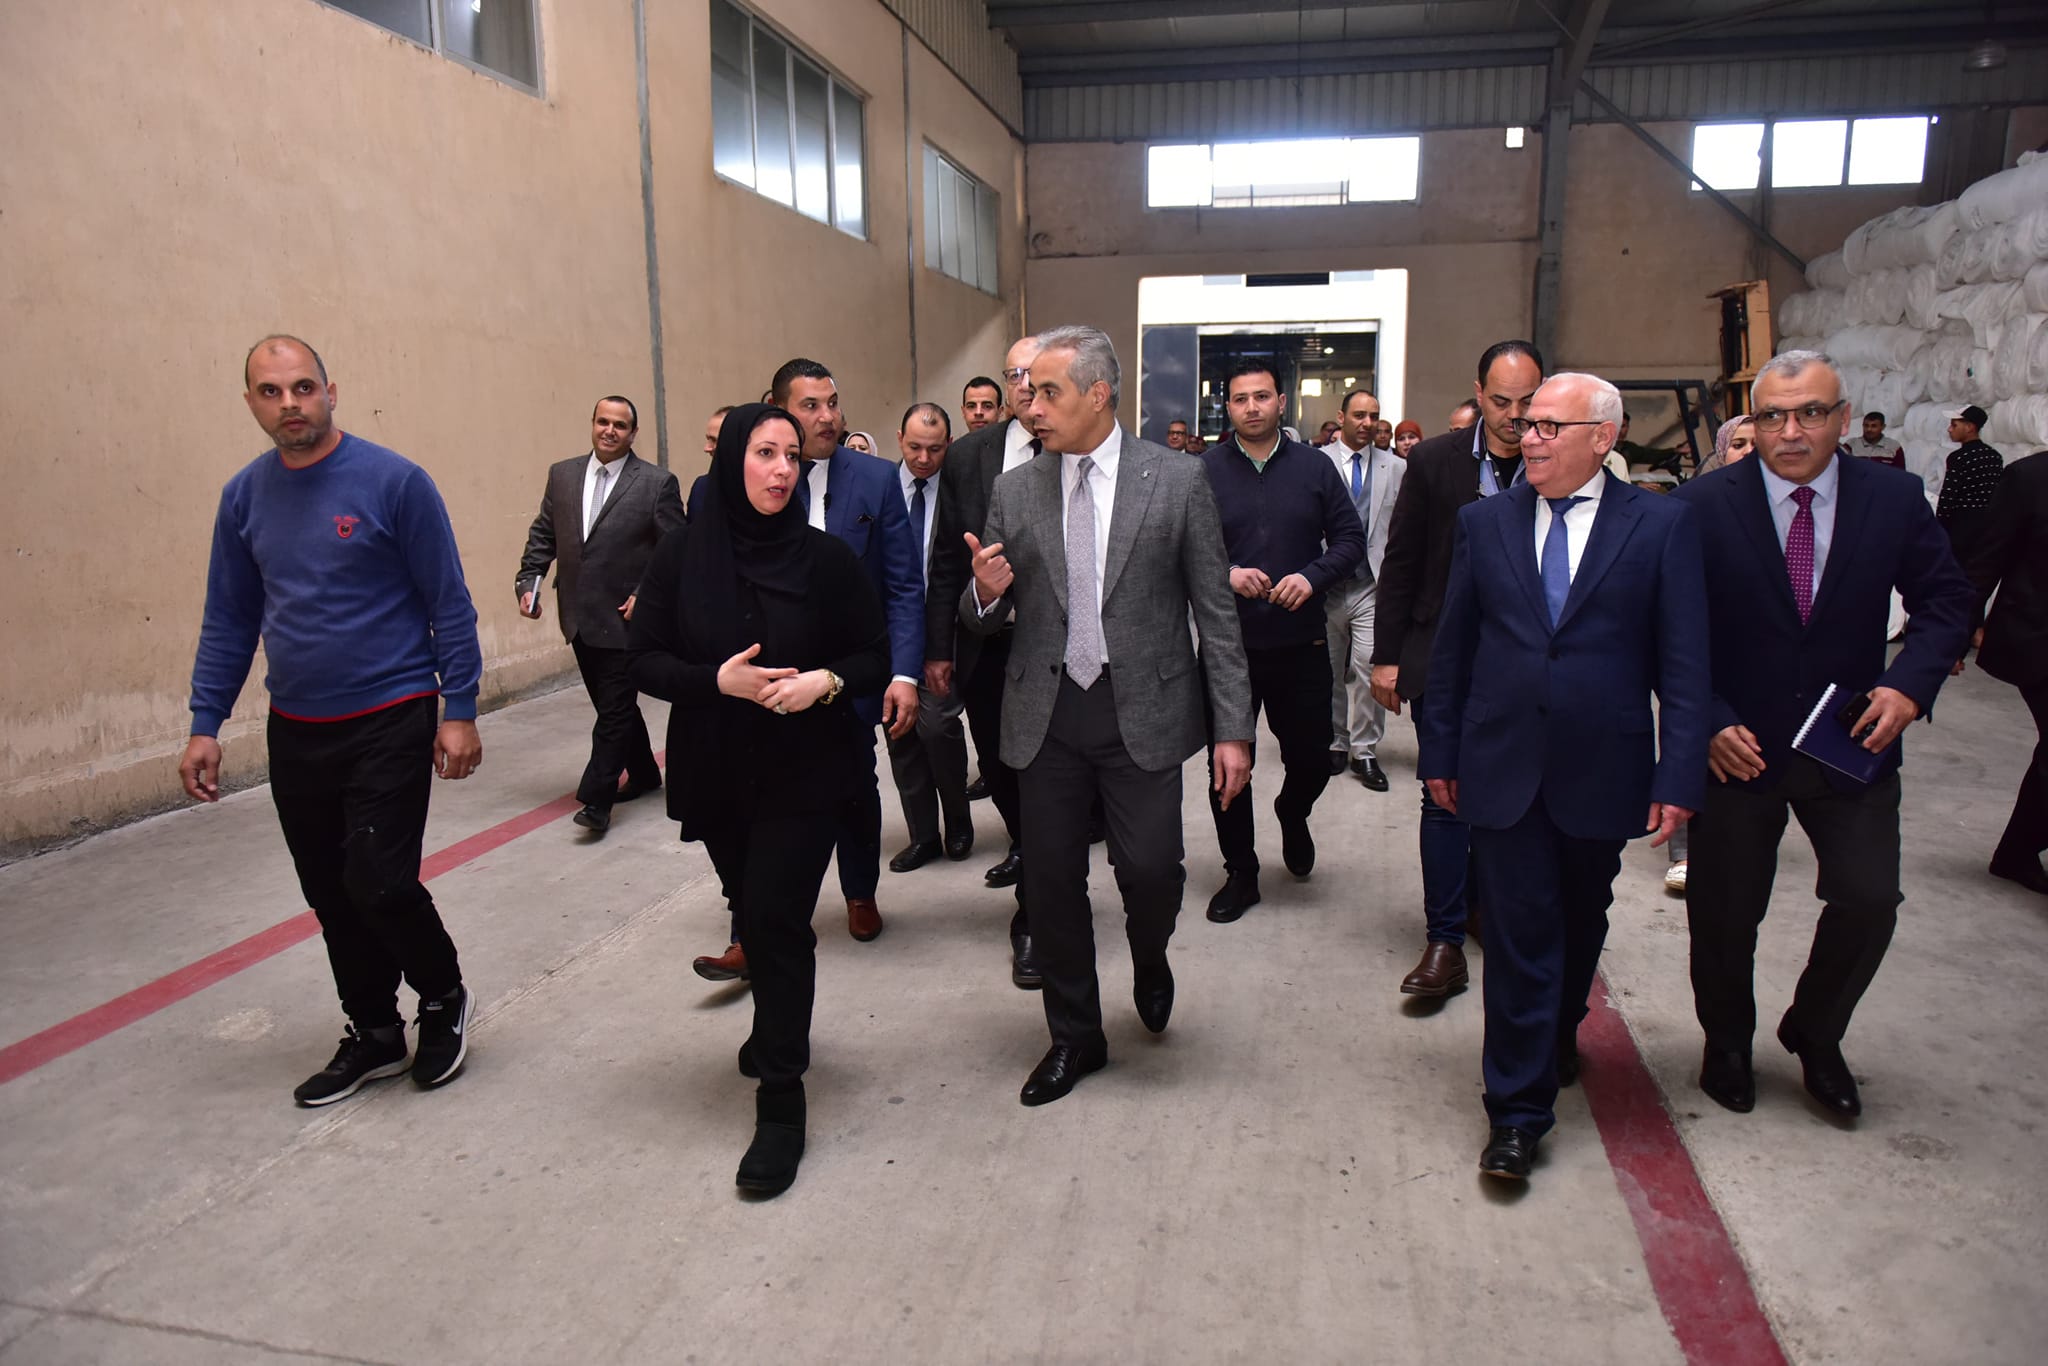 وزير العمل يصطحب محافظ بورسعيد لجولة داخل مصنع للبطاطين والسجاد والملابس الجاهزة (صور) 3